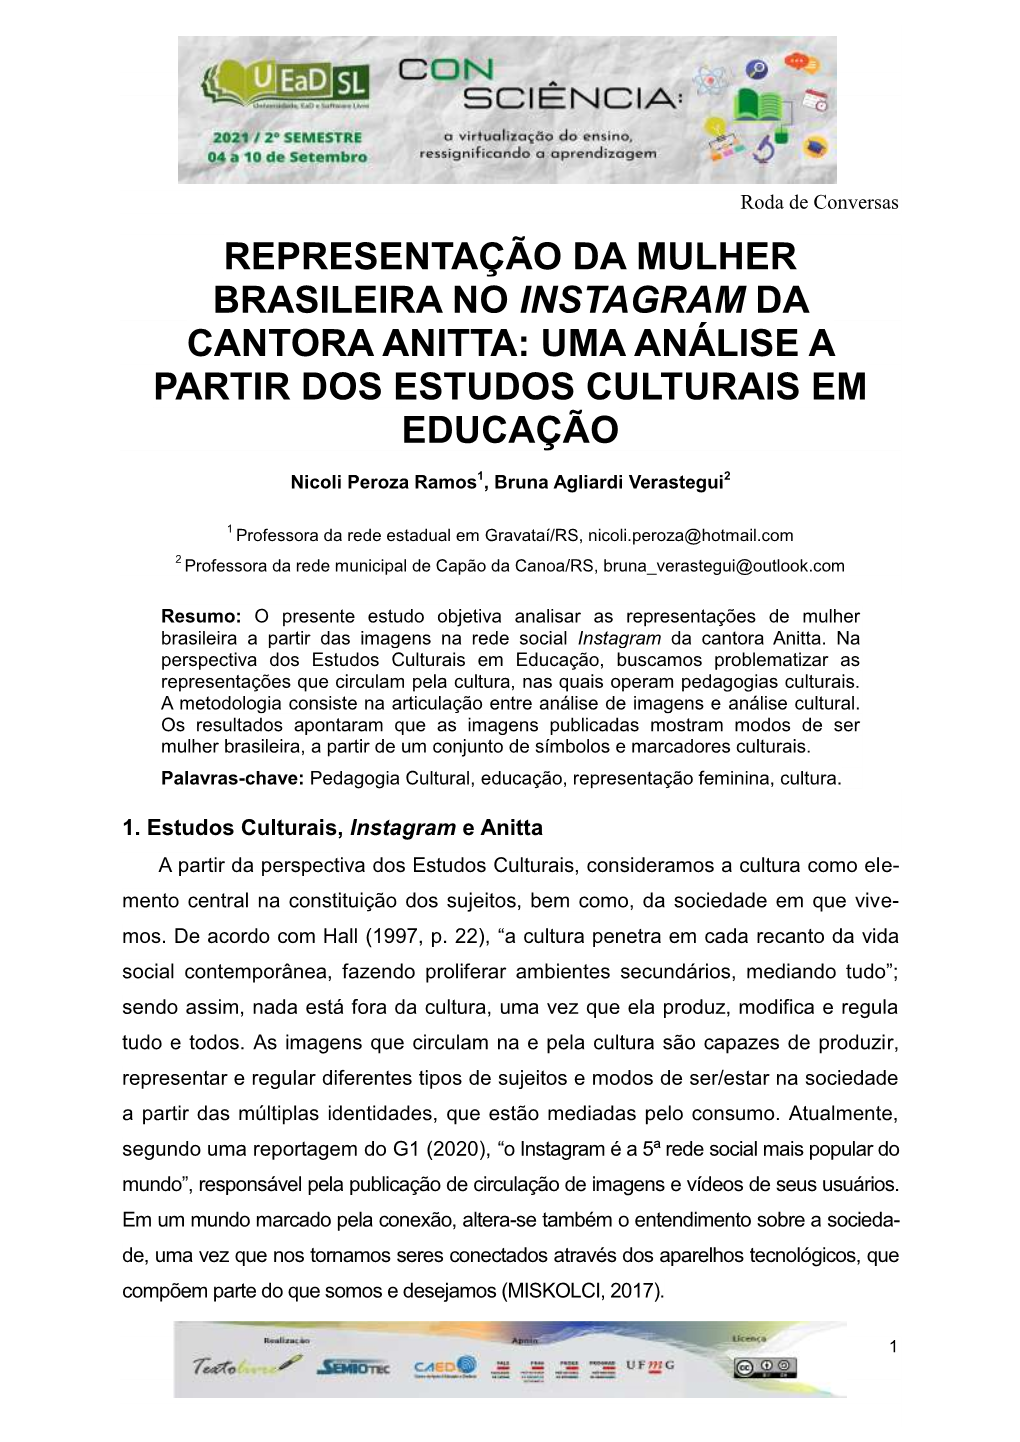 Representação Da Mulher Brasileira No Instagram Da Cantora Anitta: Uma Análise a Partir Dos Estudos Culturais Em Educação